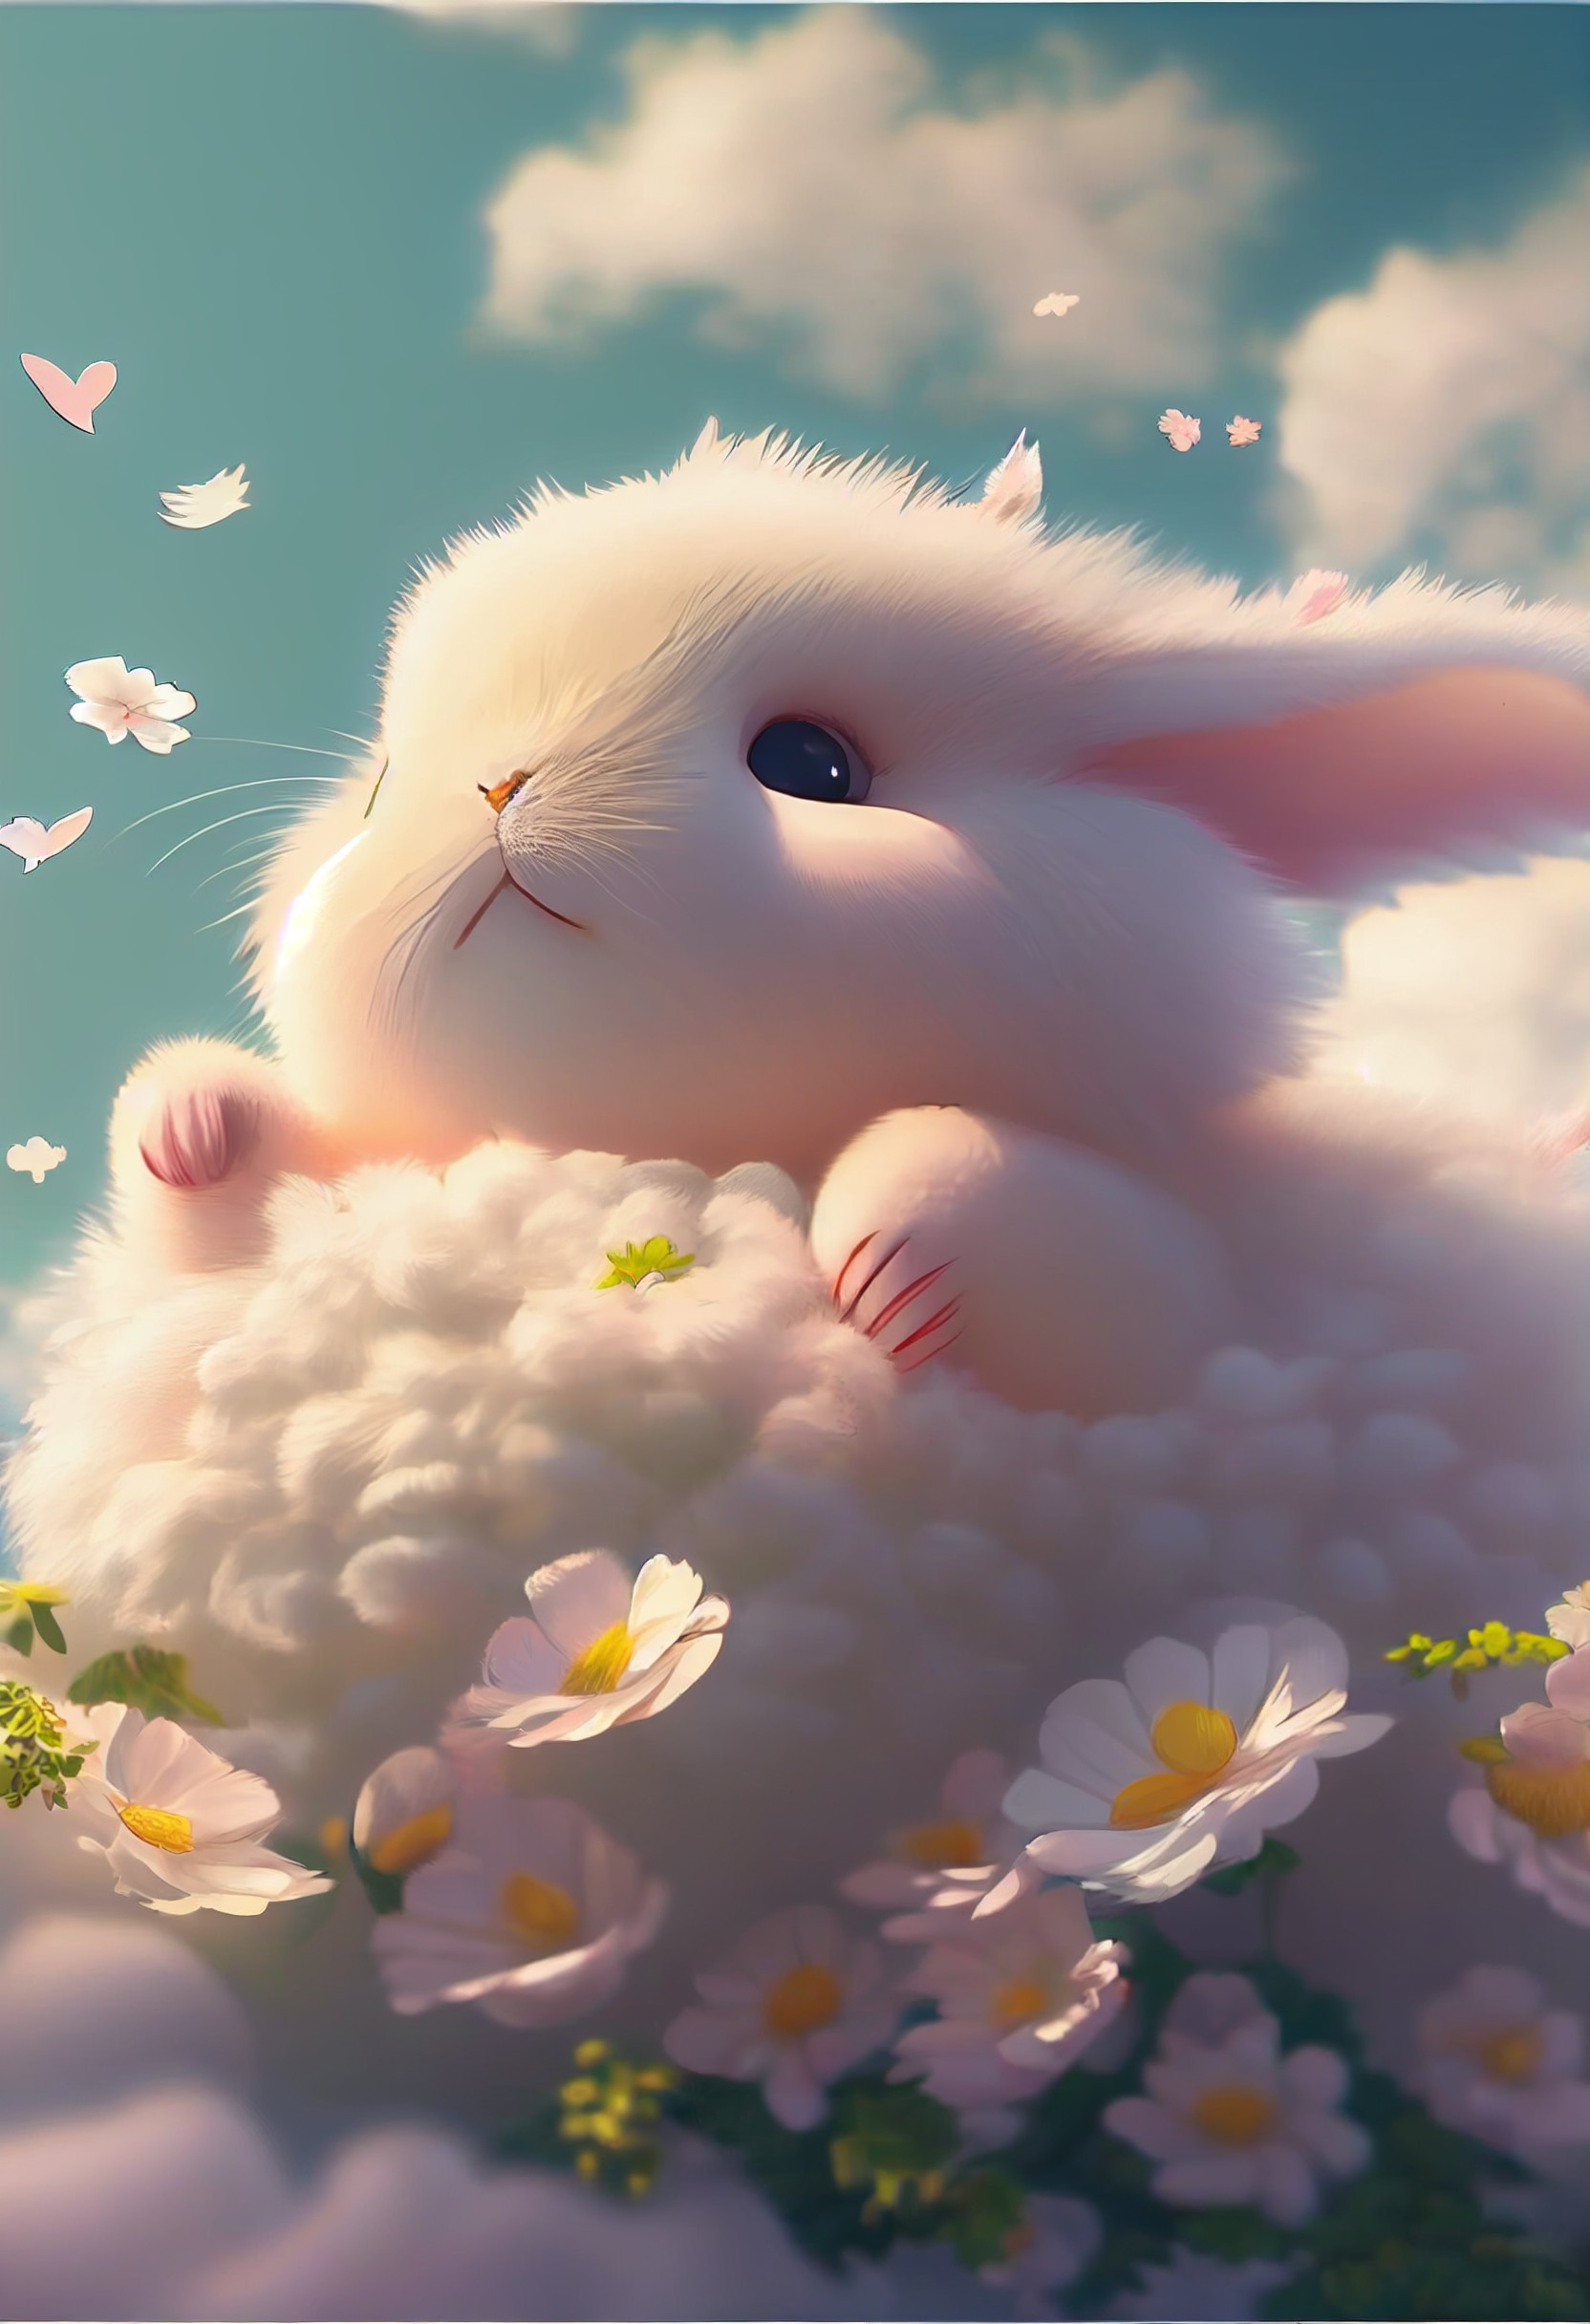 毛茸茸的白色小兔子